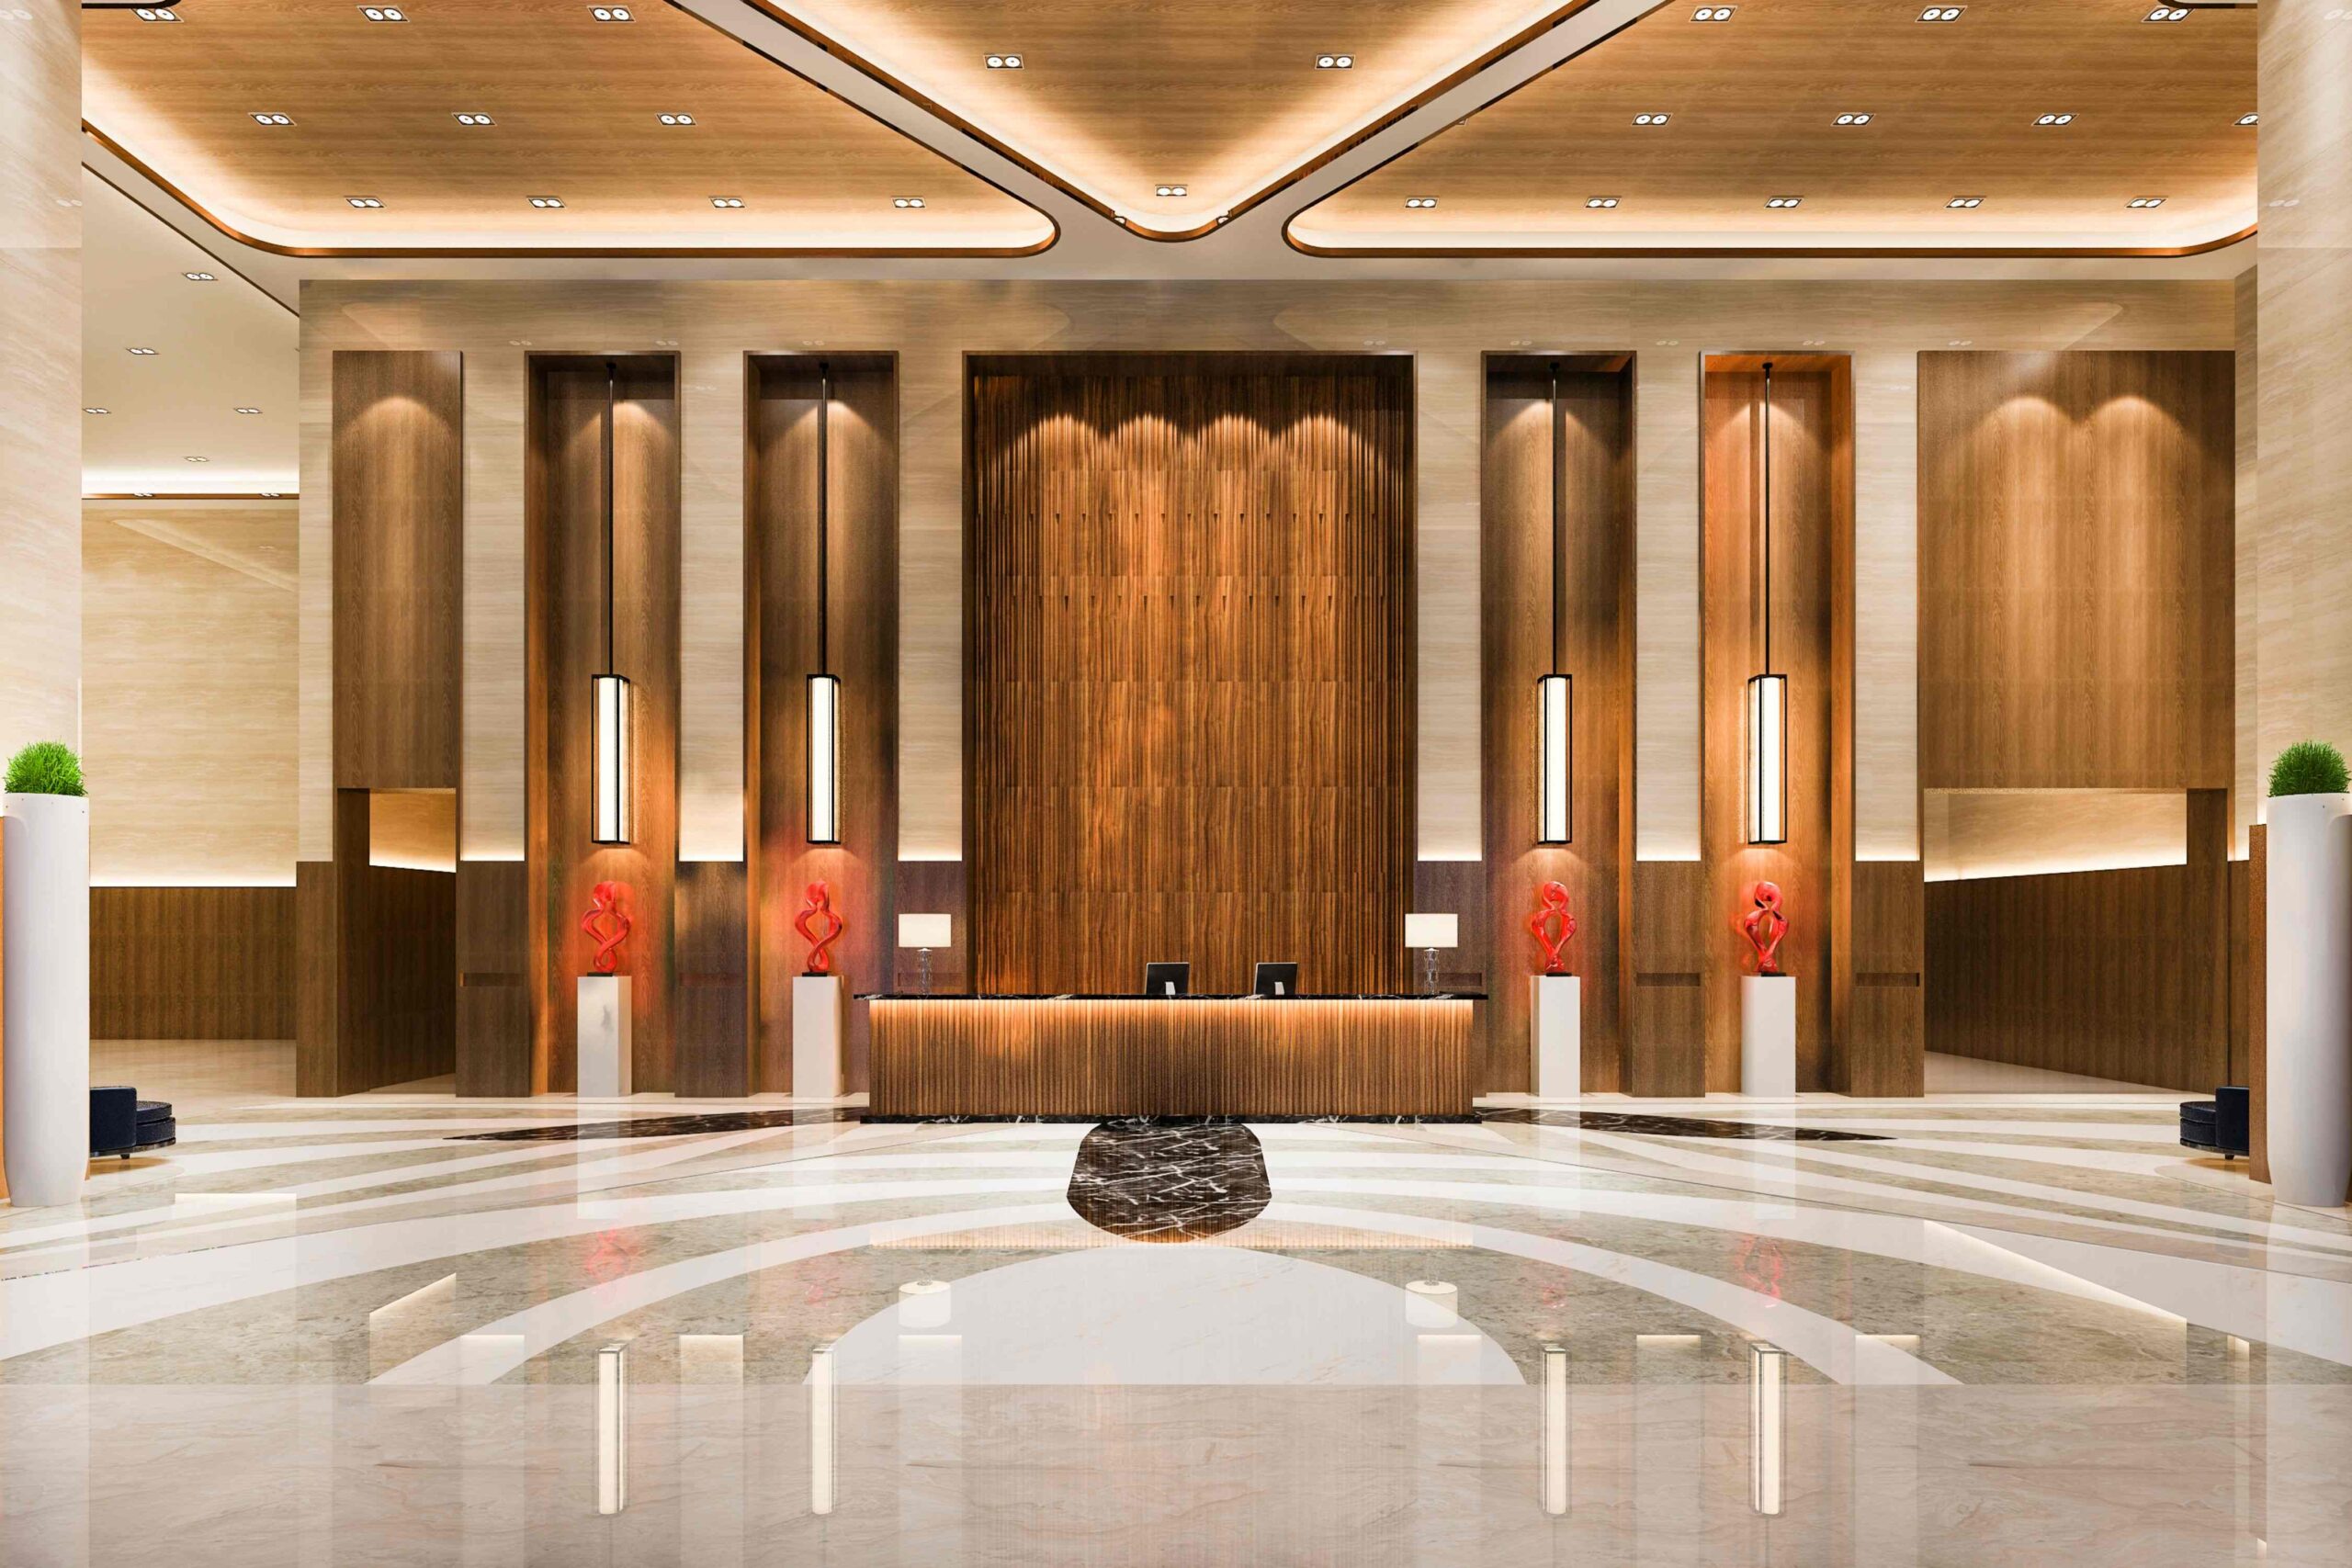 Luxury Hotel Interior Design